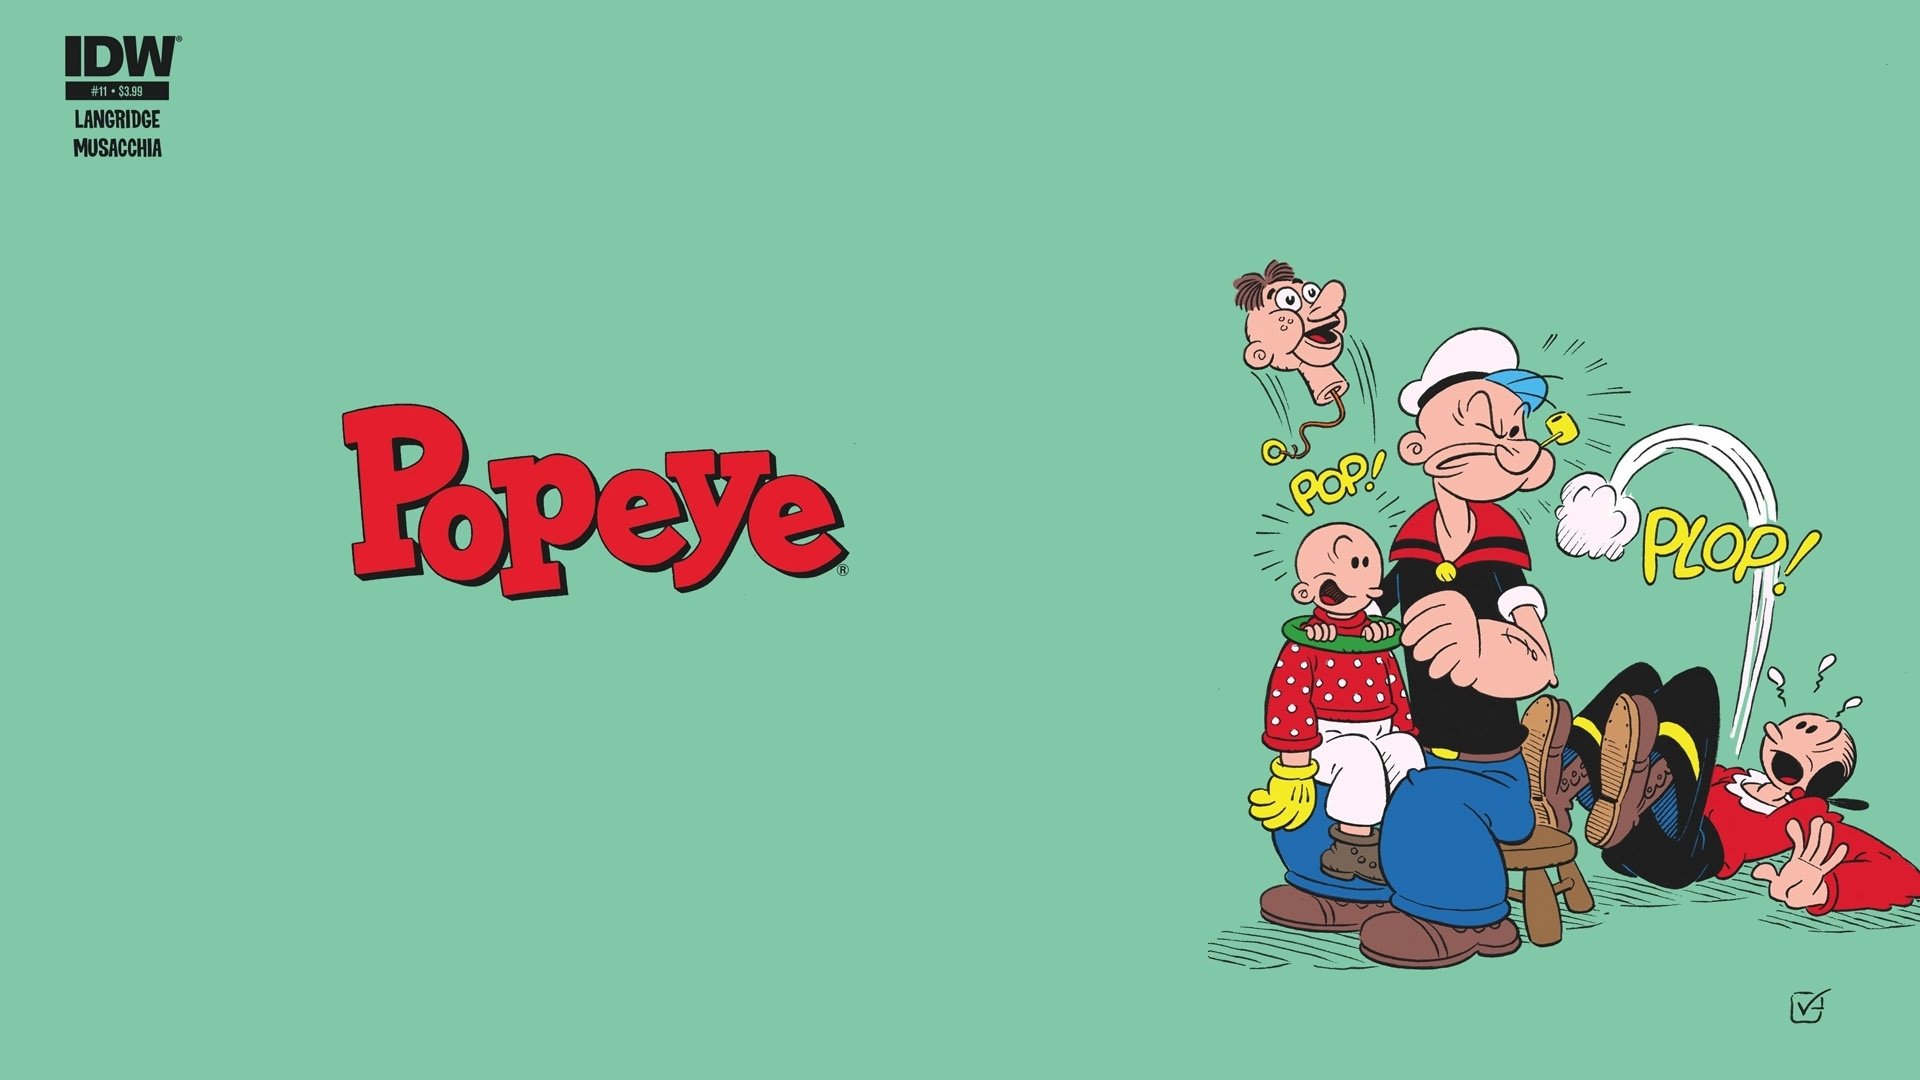 Popeye  Tap to see more cute cartoon wallpapers  mobile9  Fondo de  pantalla de dibujos animados Fondos de dibujos animados Popeye el marino